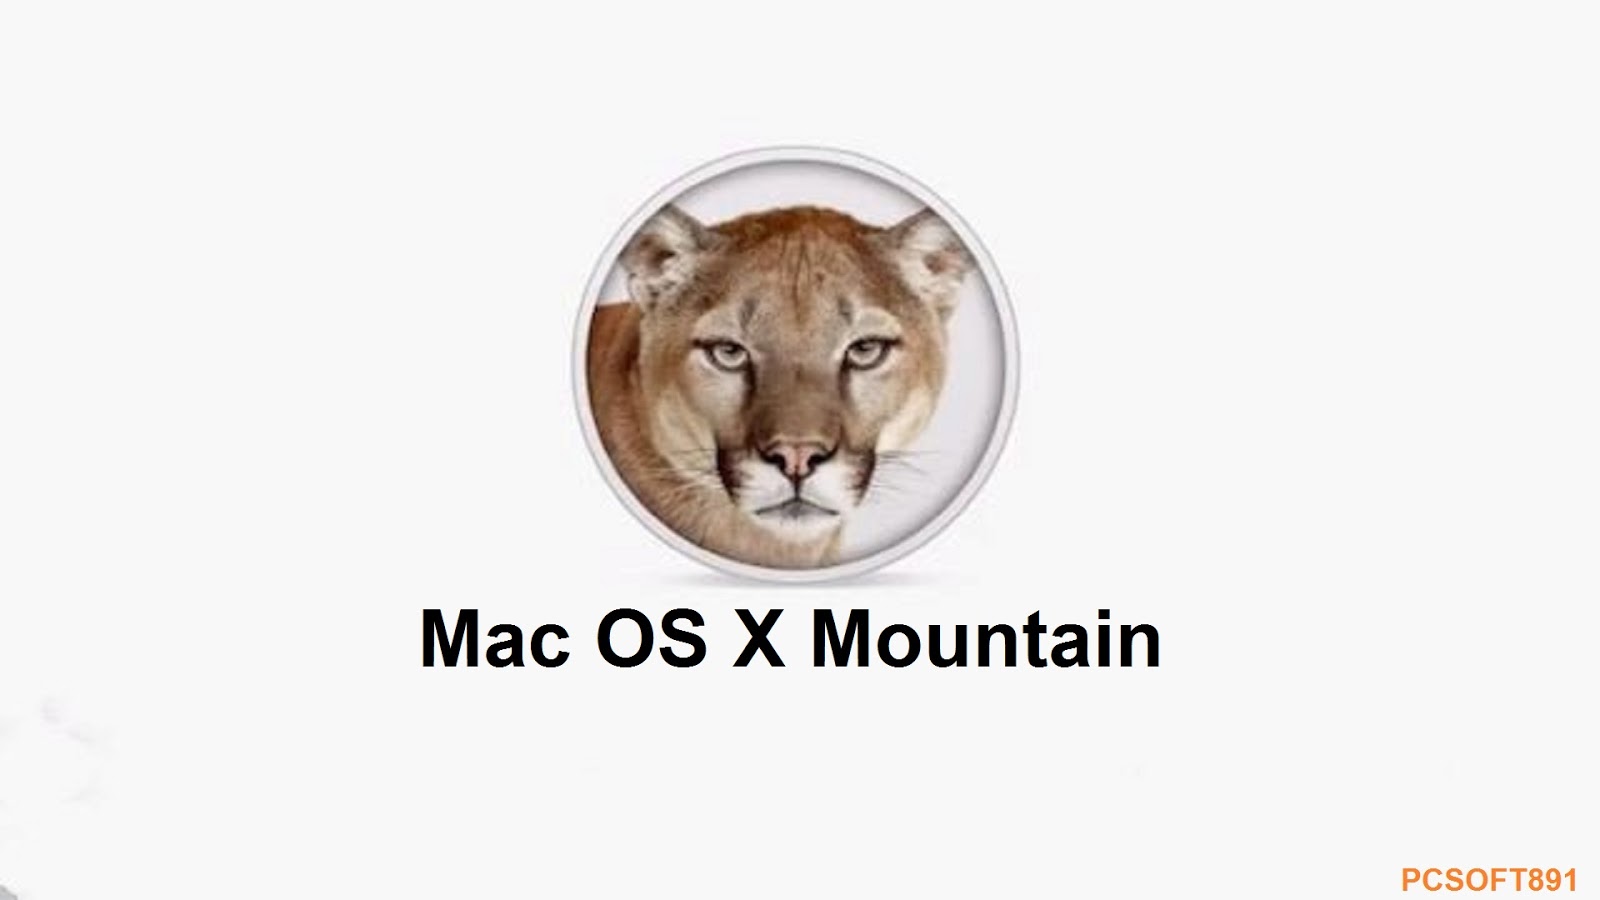 Mac os x 10.8 mountain lion free. download full version